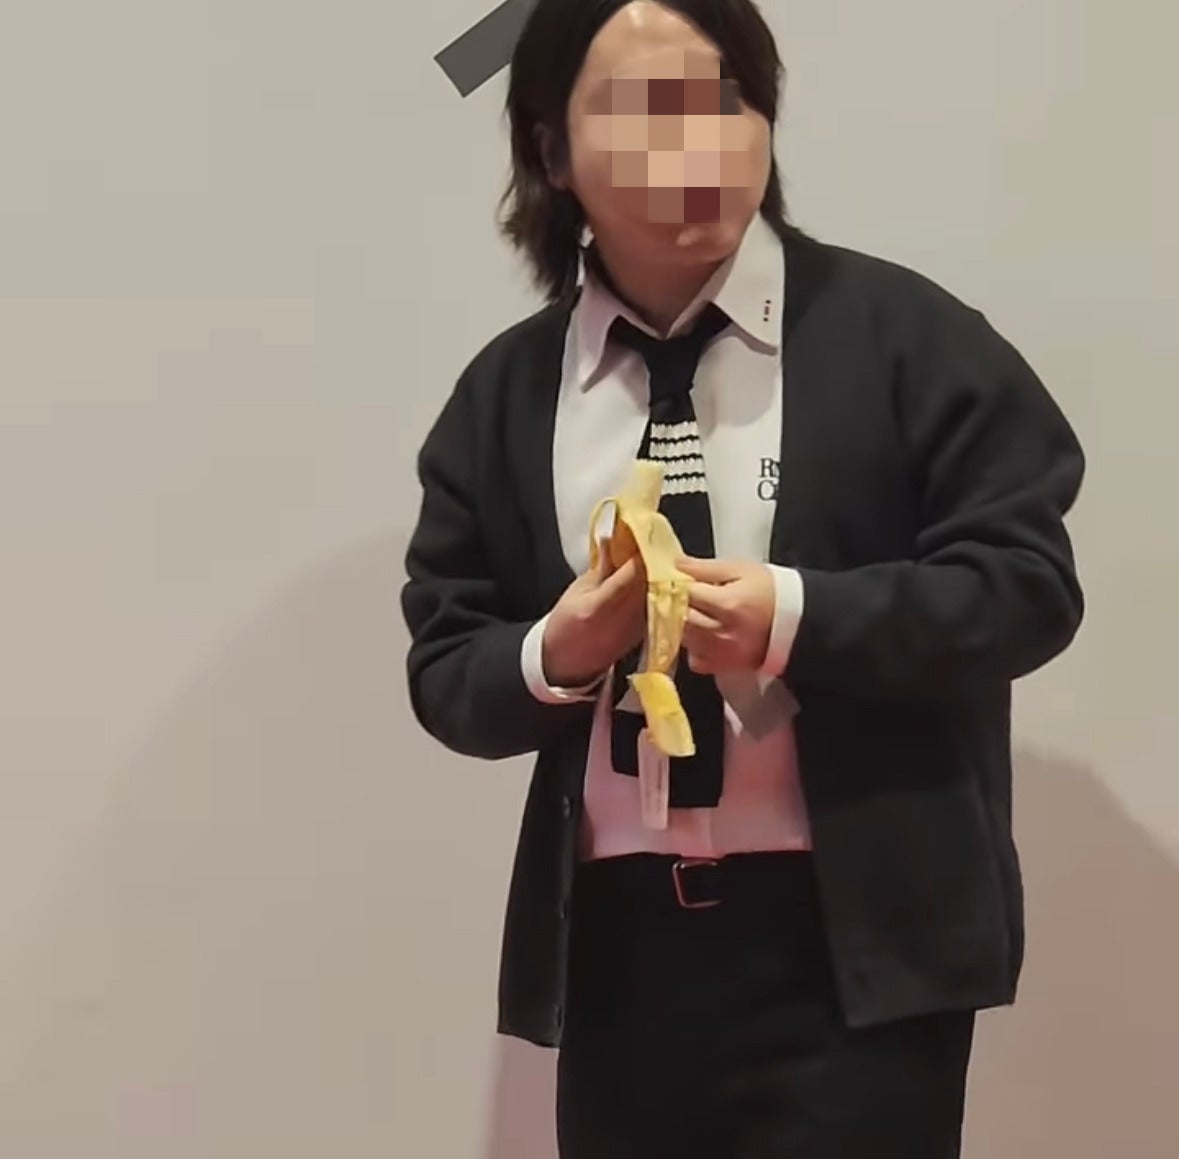 นักศึกษา เกาหลีใต้ กิน ผลงานศิลปะ กล้วยแปะผนัง